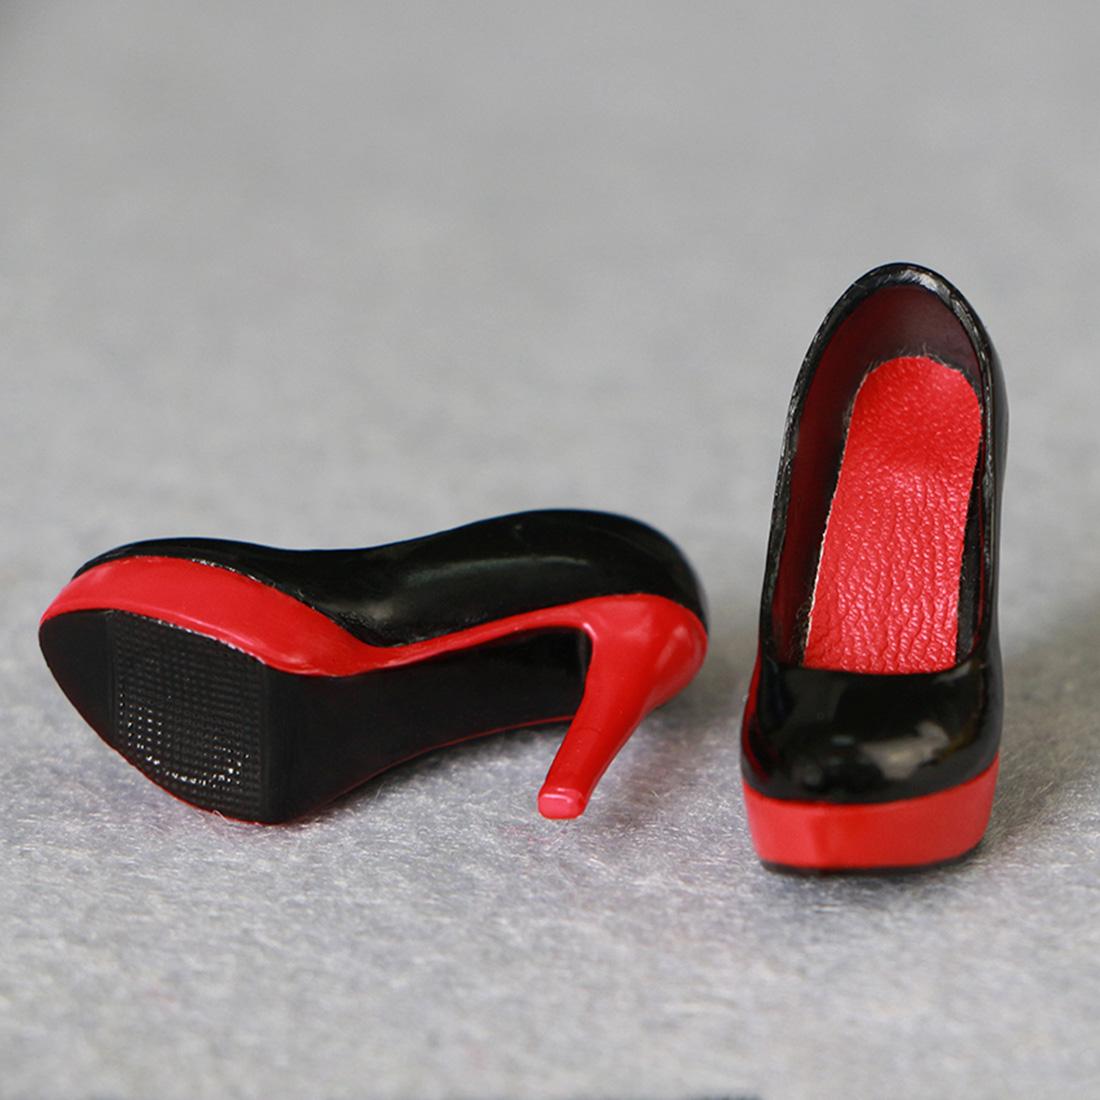 Изображение товара: 2019 горячая Распродажа Туфли на высоком каблуке для 1/6 масштаба фигурки женщины модель обучающая игрушка Подарки для детей взрослых 5 цветов